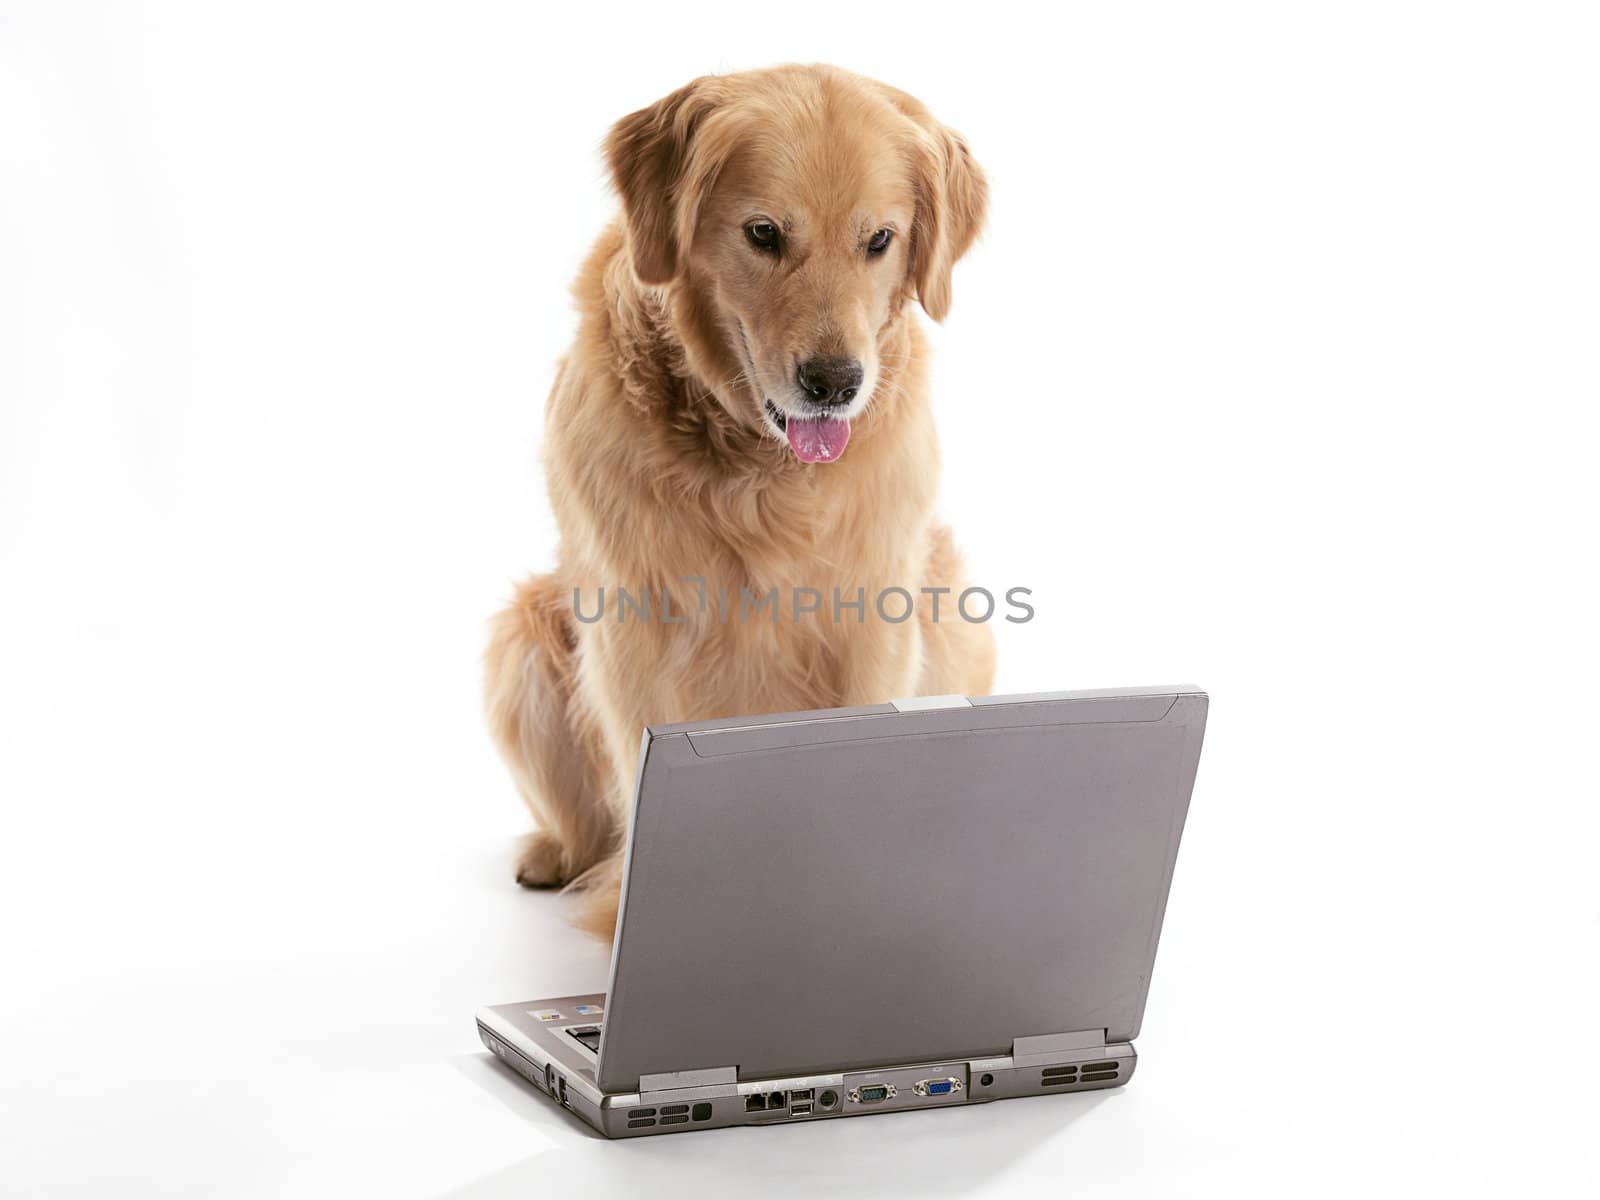 A Golden Retriever using a laptop